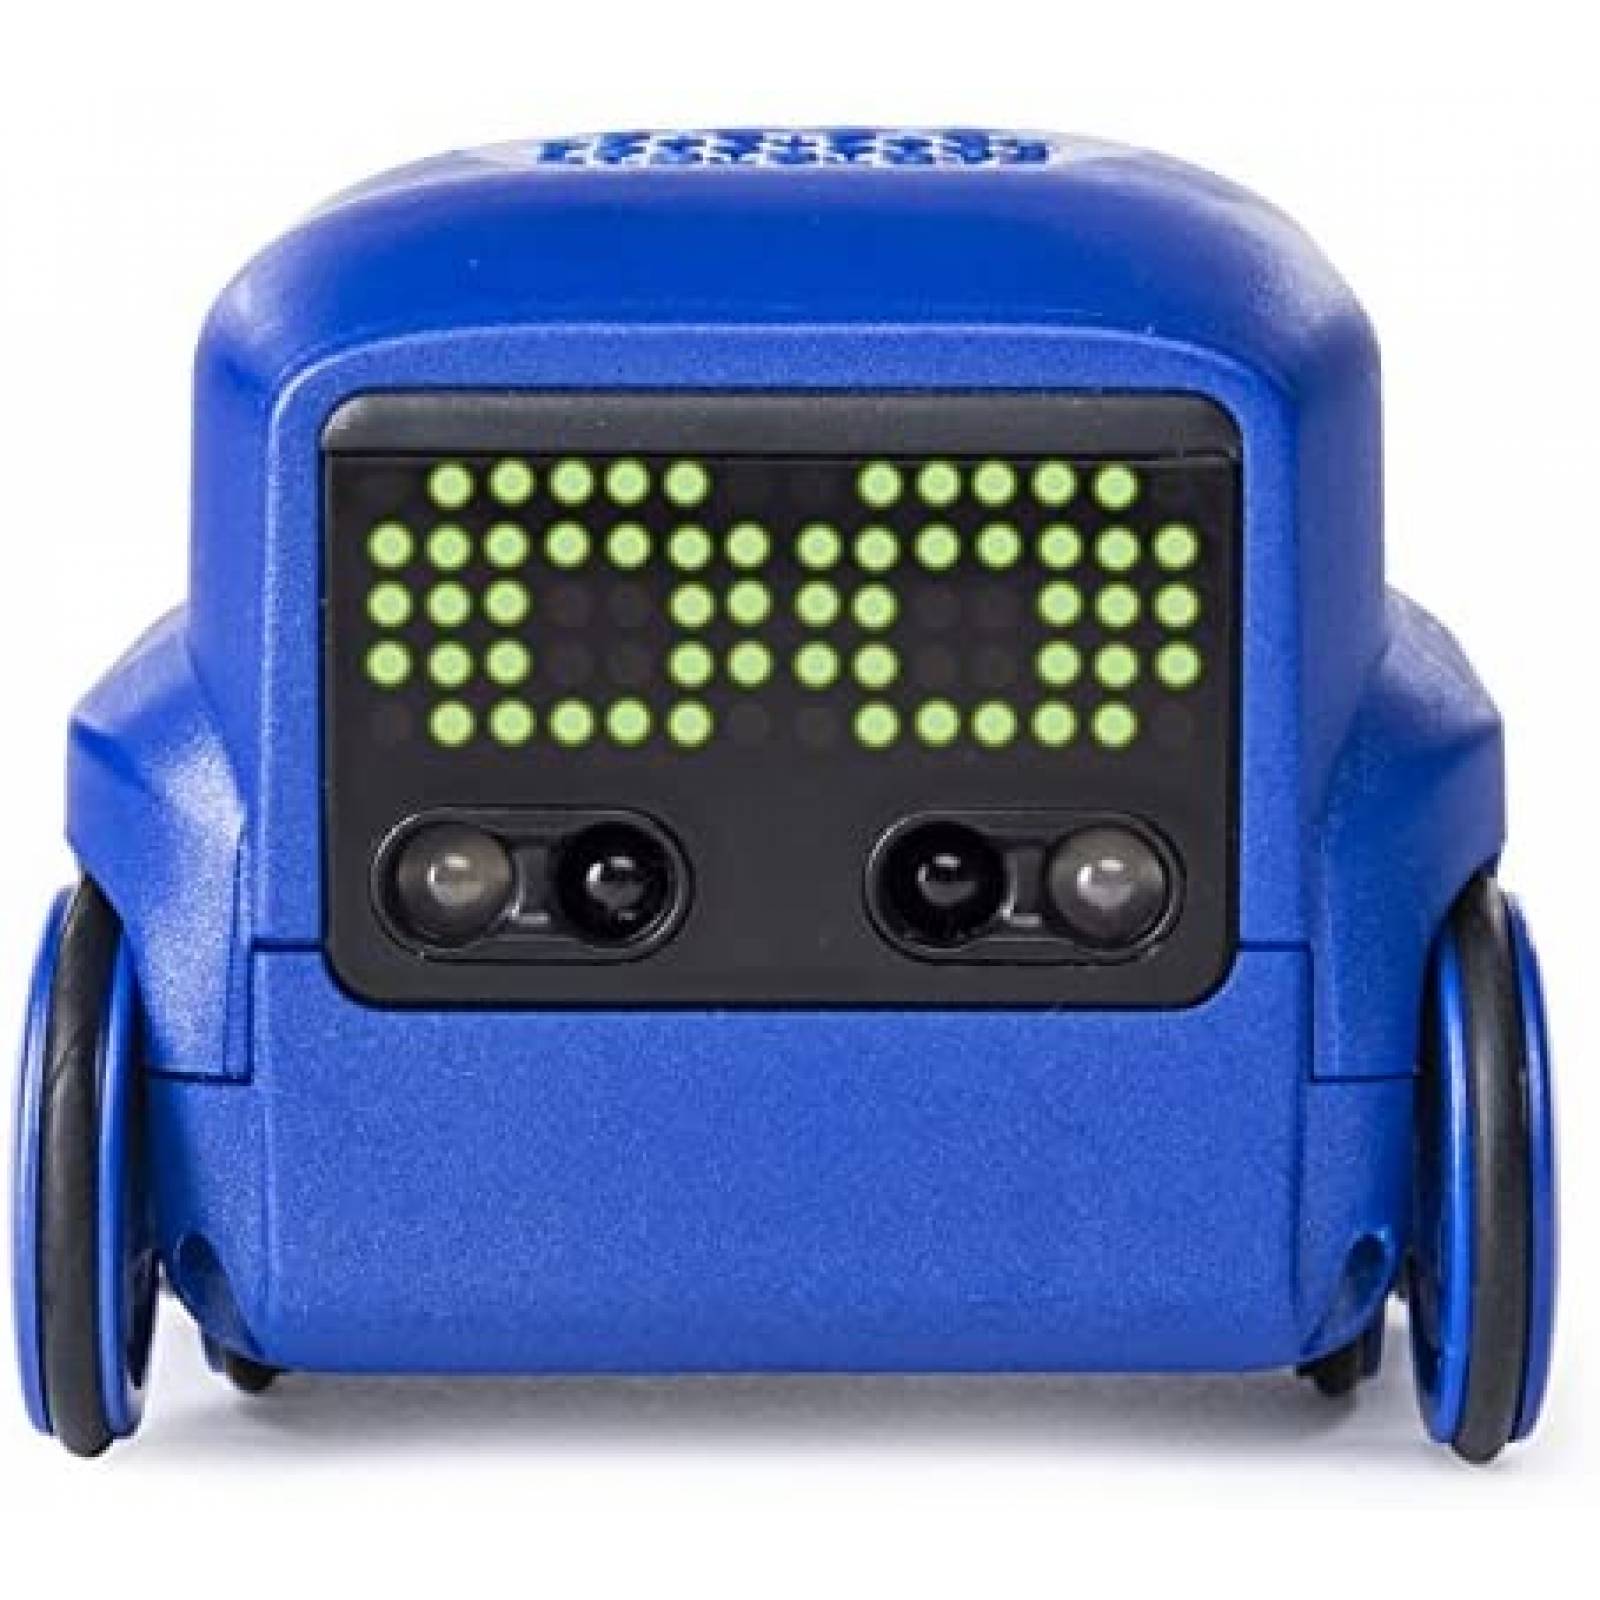 Robot de Juguete Boxer con Control Remoto Interactivo -Azul